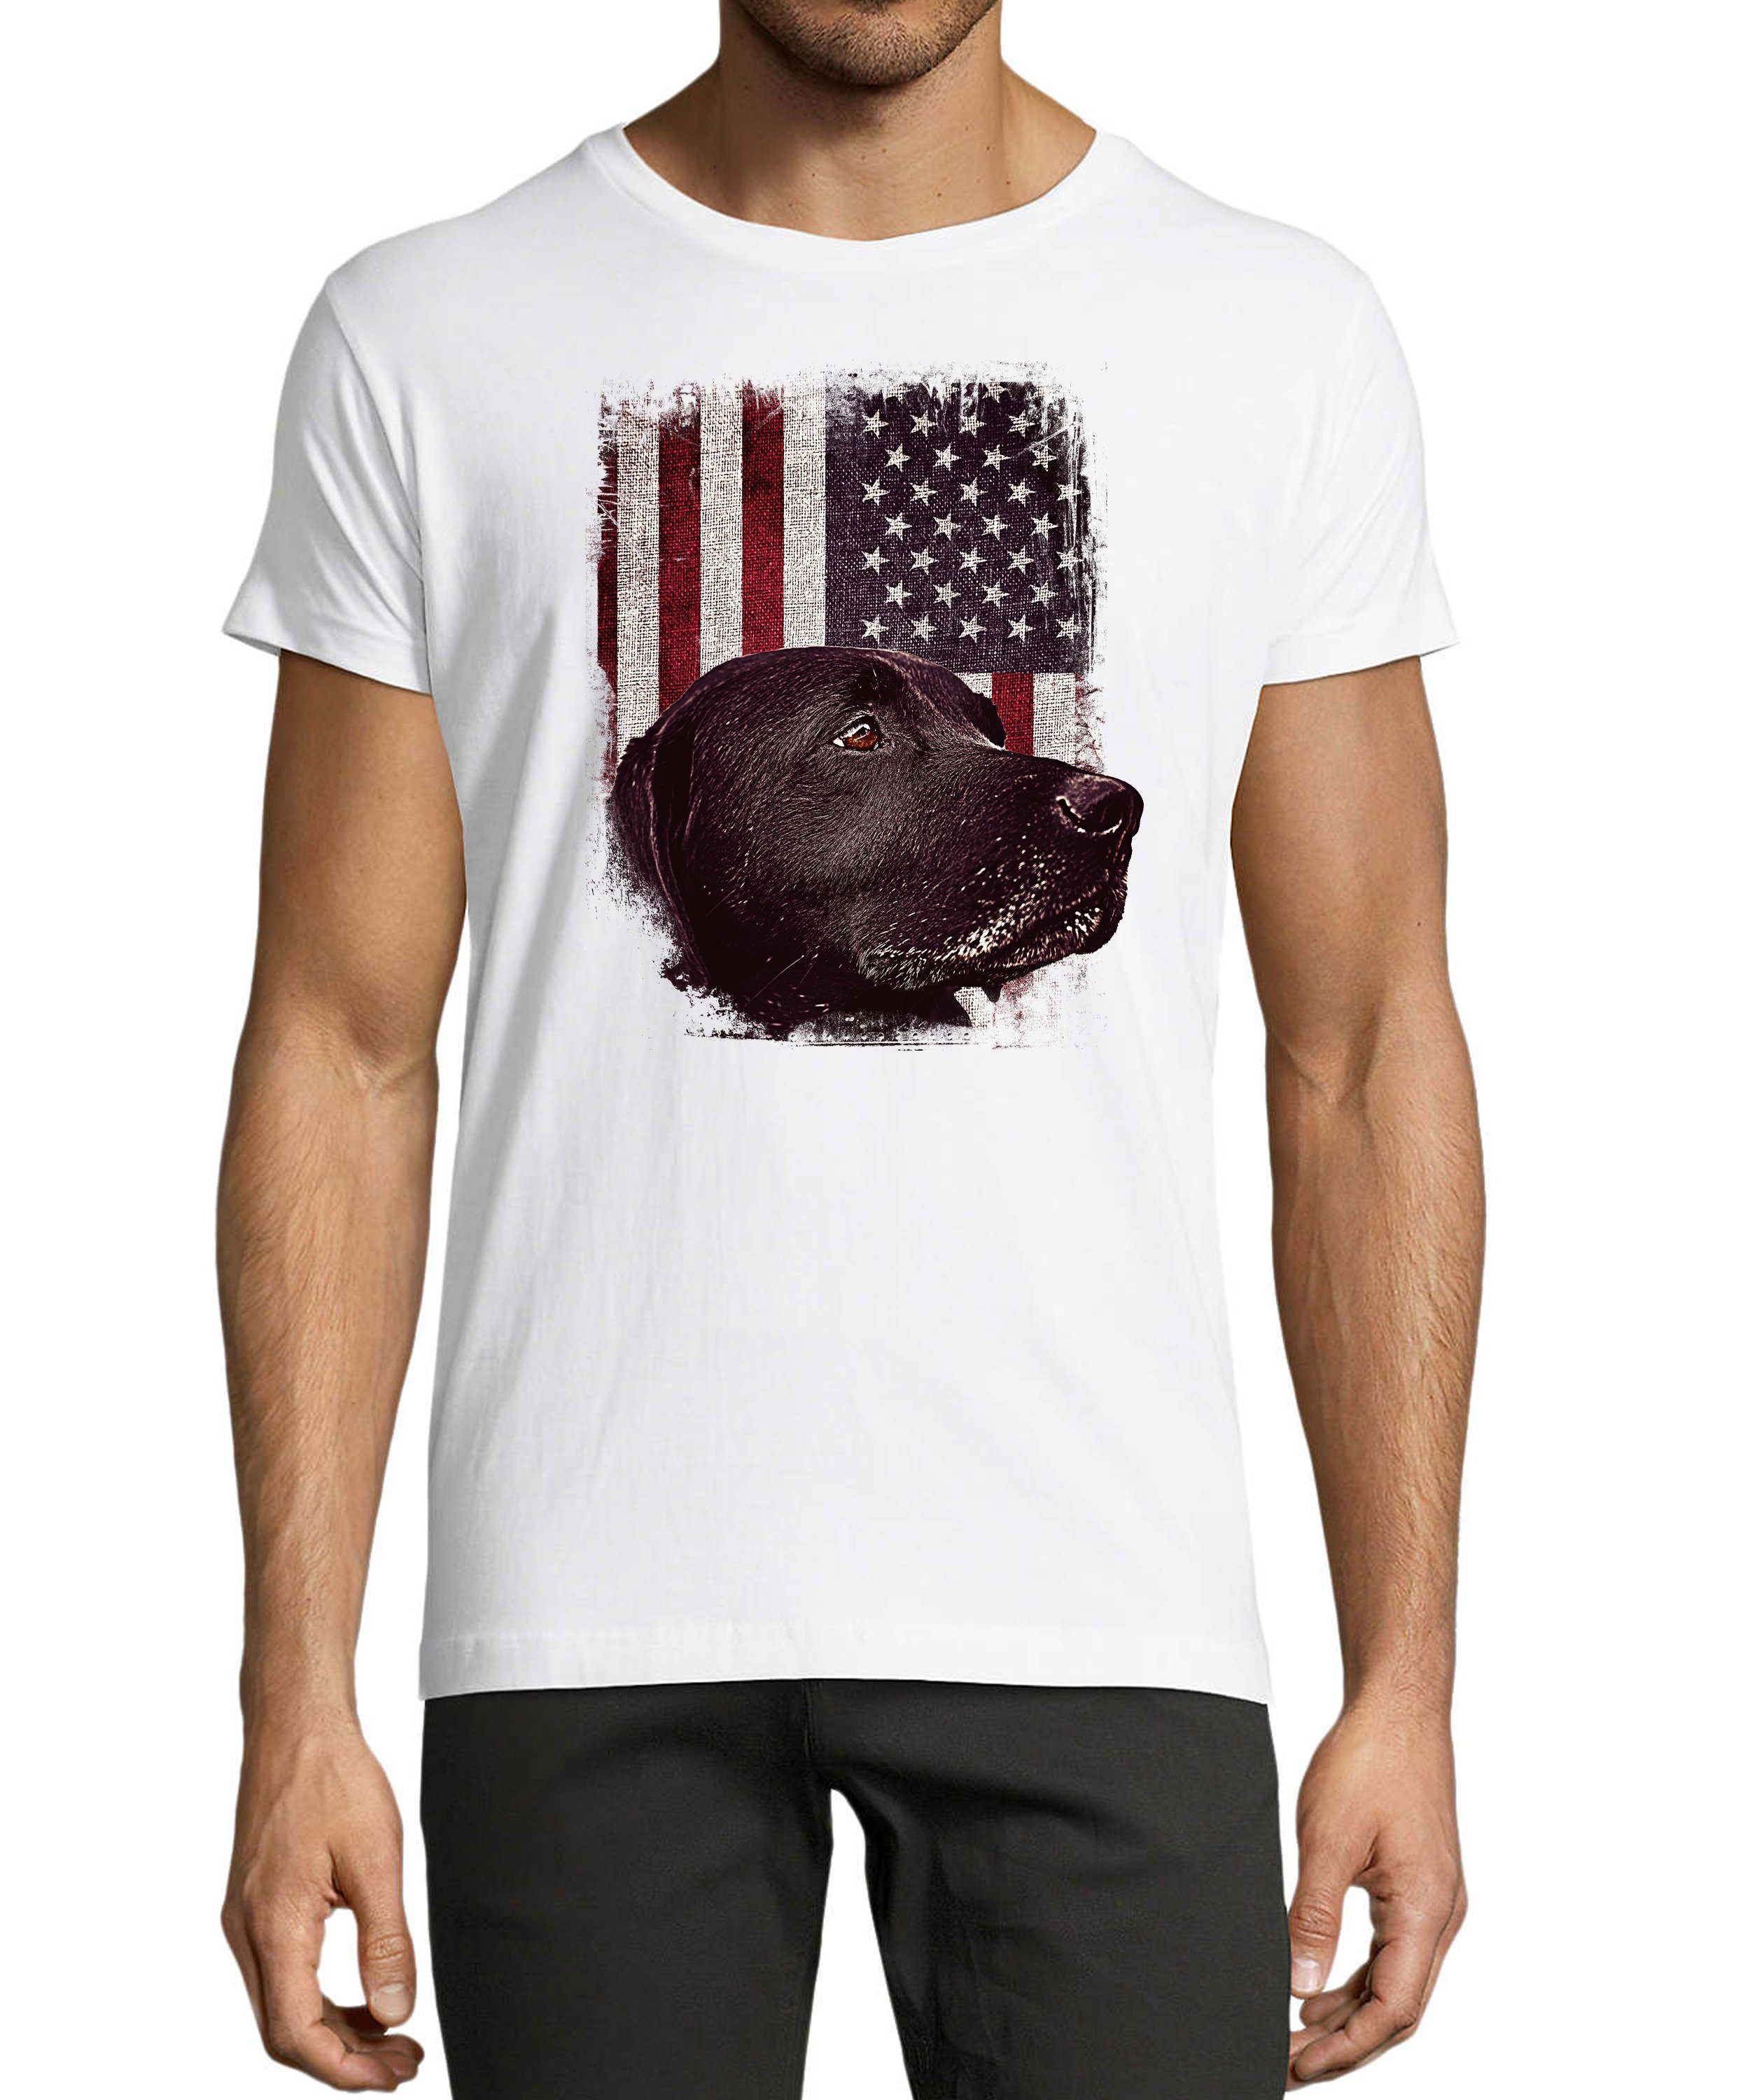 MyDesign24 T-Shirt Herren Hunde Print Shirt - Schwarzer Labrador vor USA Flagge Baumwollshirt mit Aufdruck Regular Fit, i246 weiss